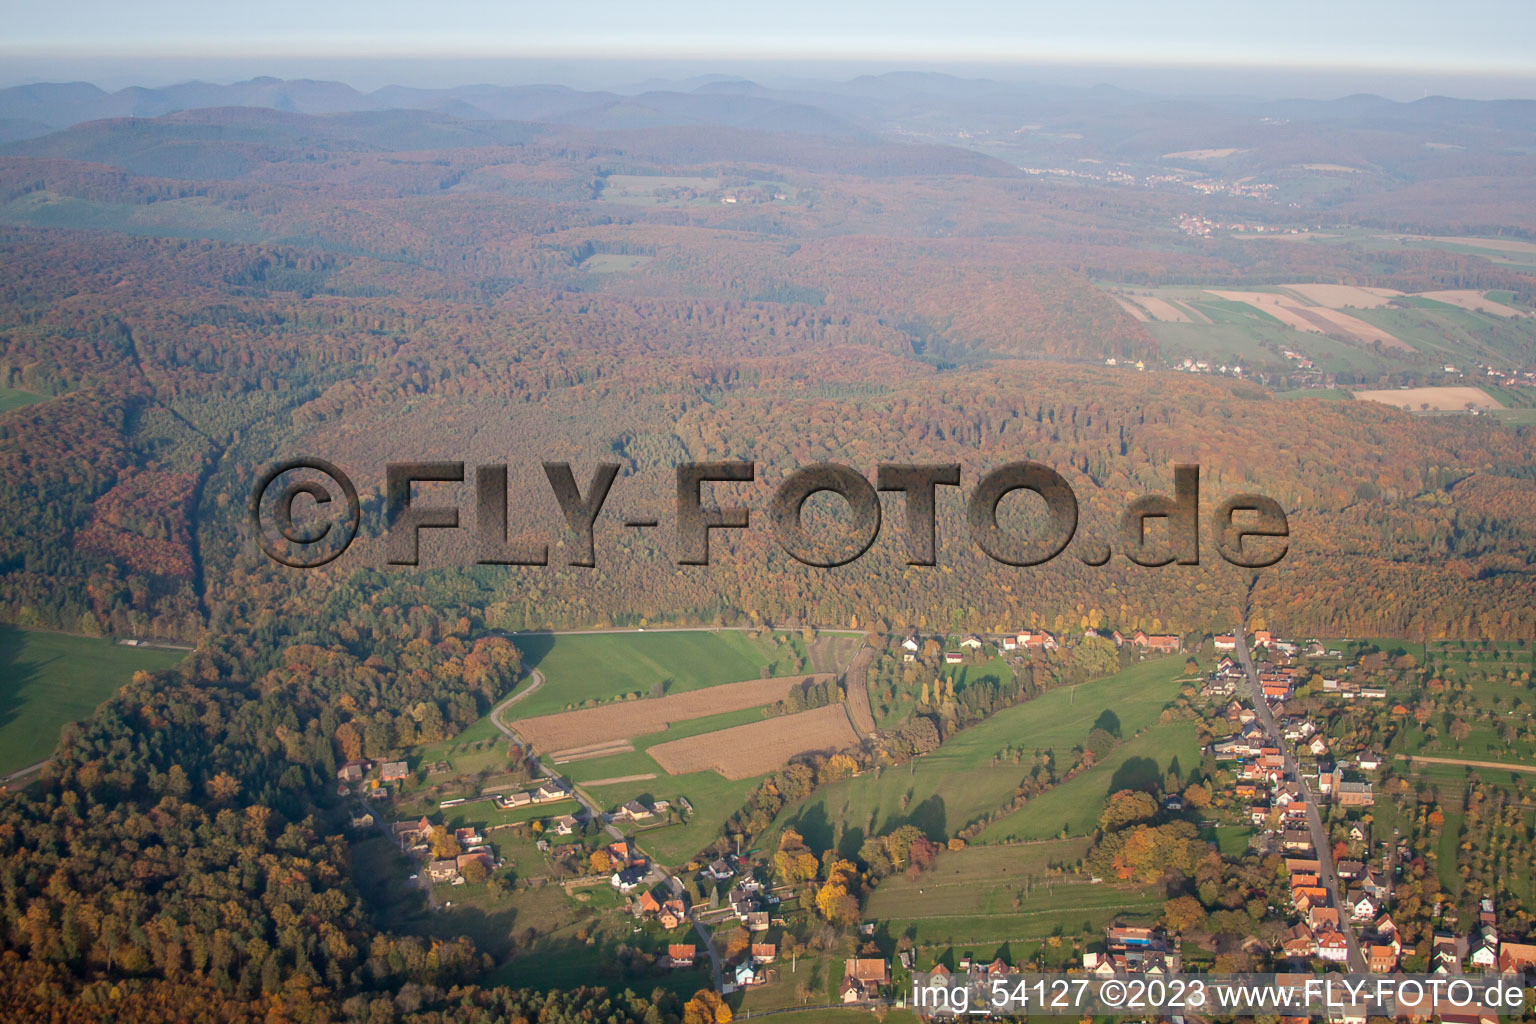 Nehwiller-près-Wœrth im Bundesland Bas-Rhin, Frankreich aus der Drohnenperspektive